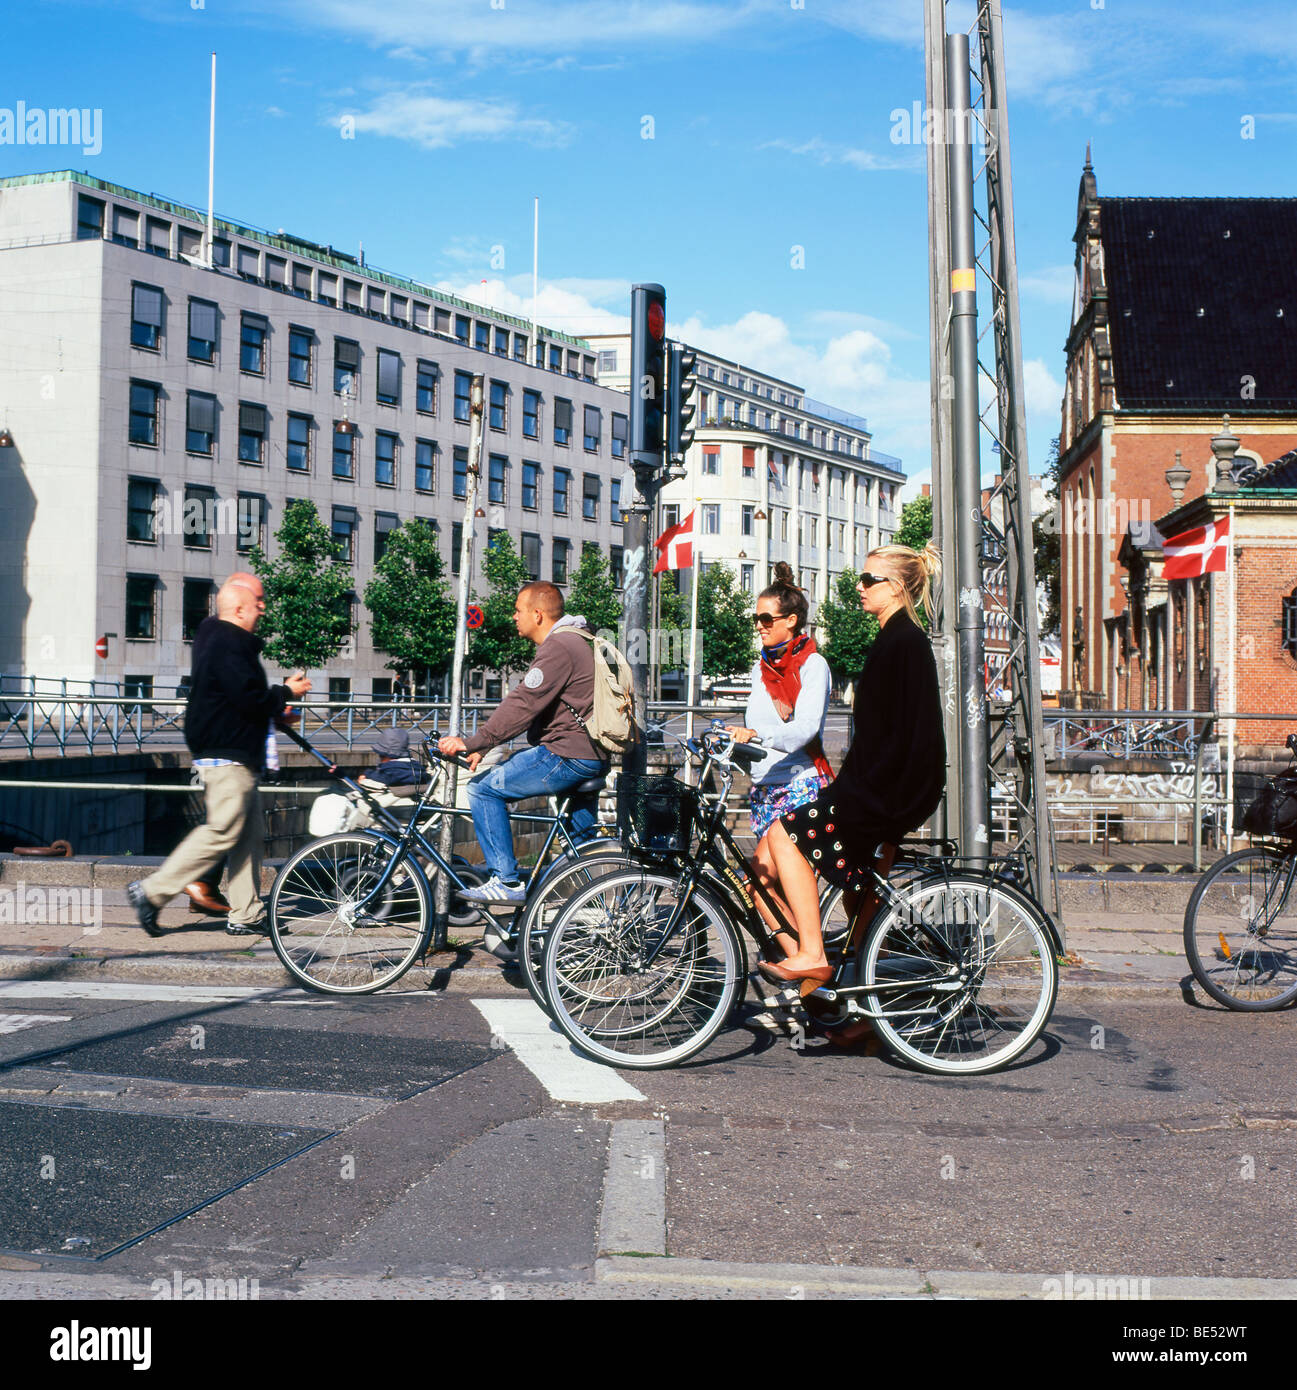 Femme élégante cycliste de banlieue en attente avec groupe de personnes sur des vélos sur une rue, à un carrefour en été à Copenhague Denmar KATHY DEWITT Banque D'Images